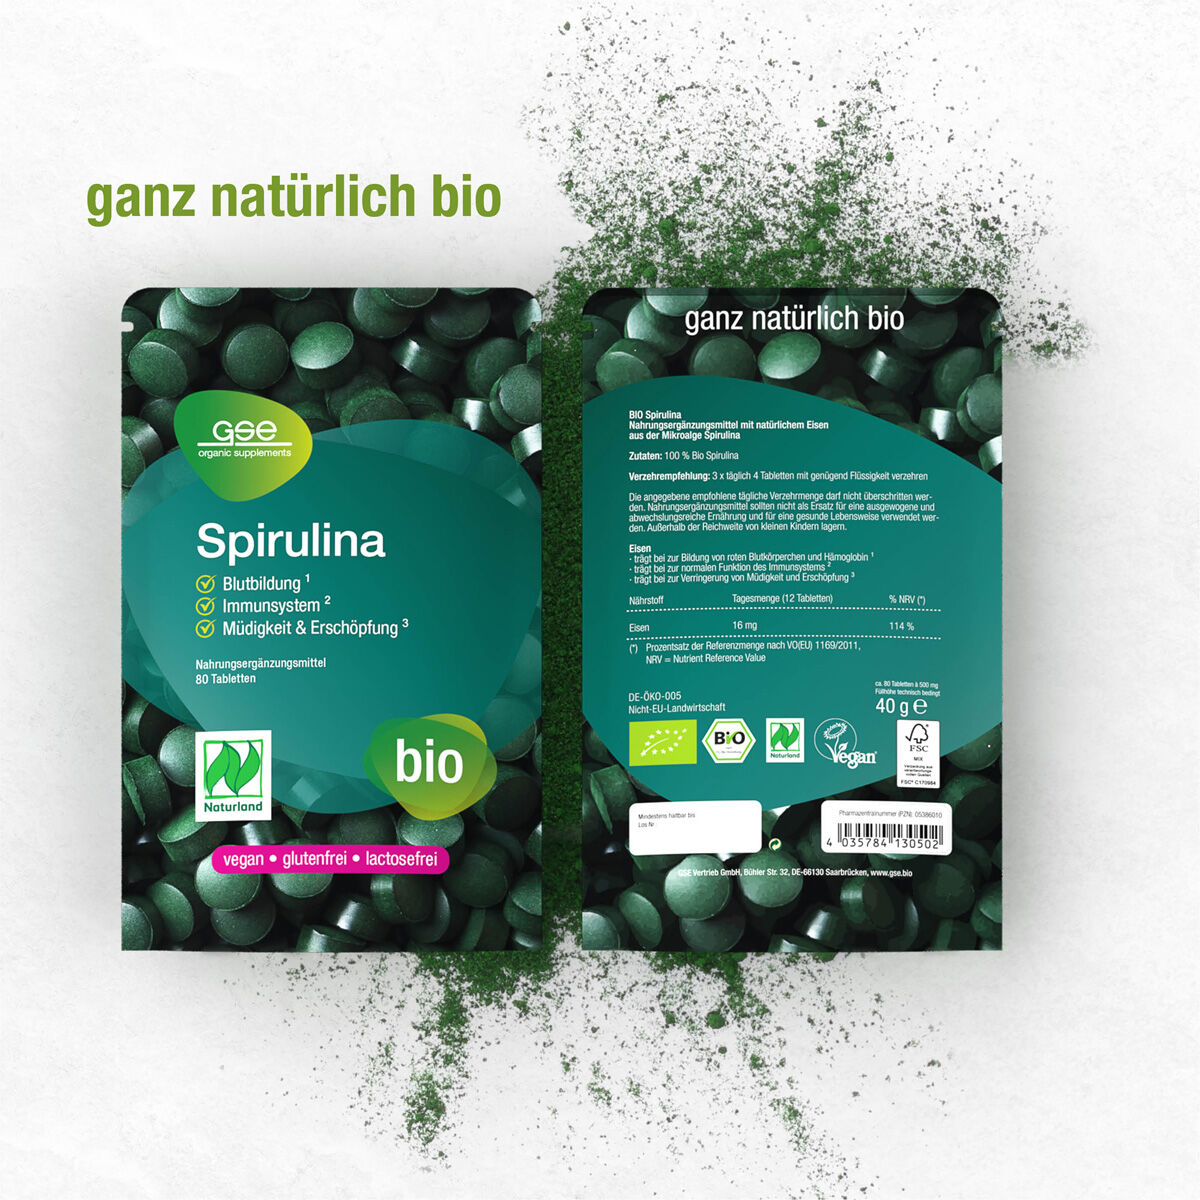 Naturland Bio Chlorella (Tabletten)